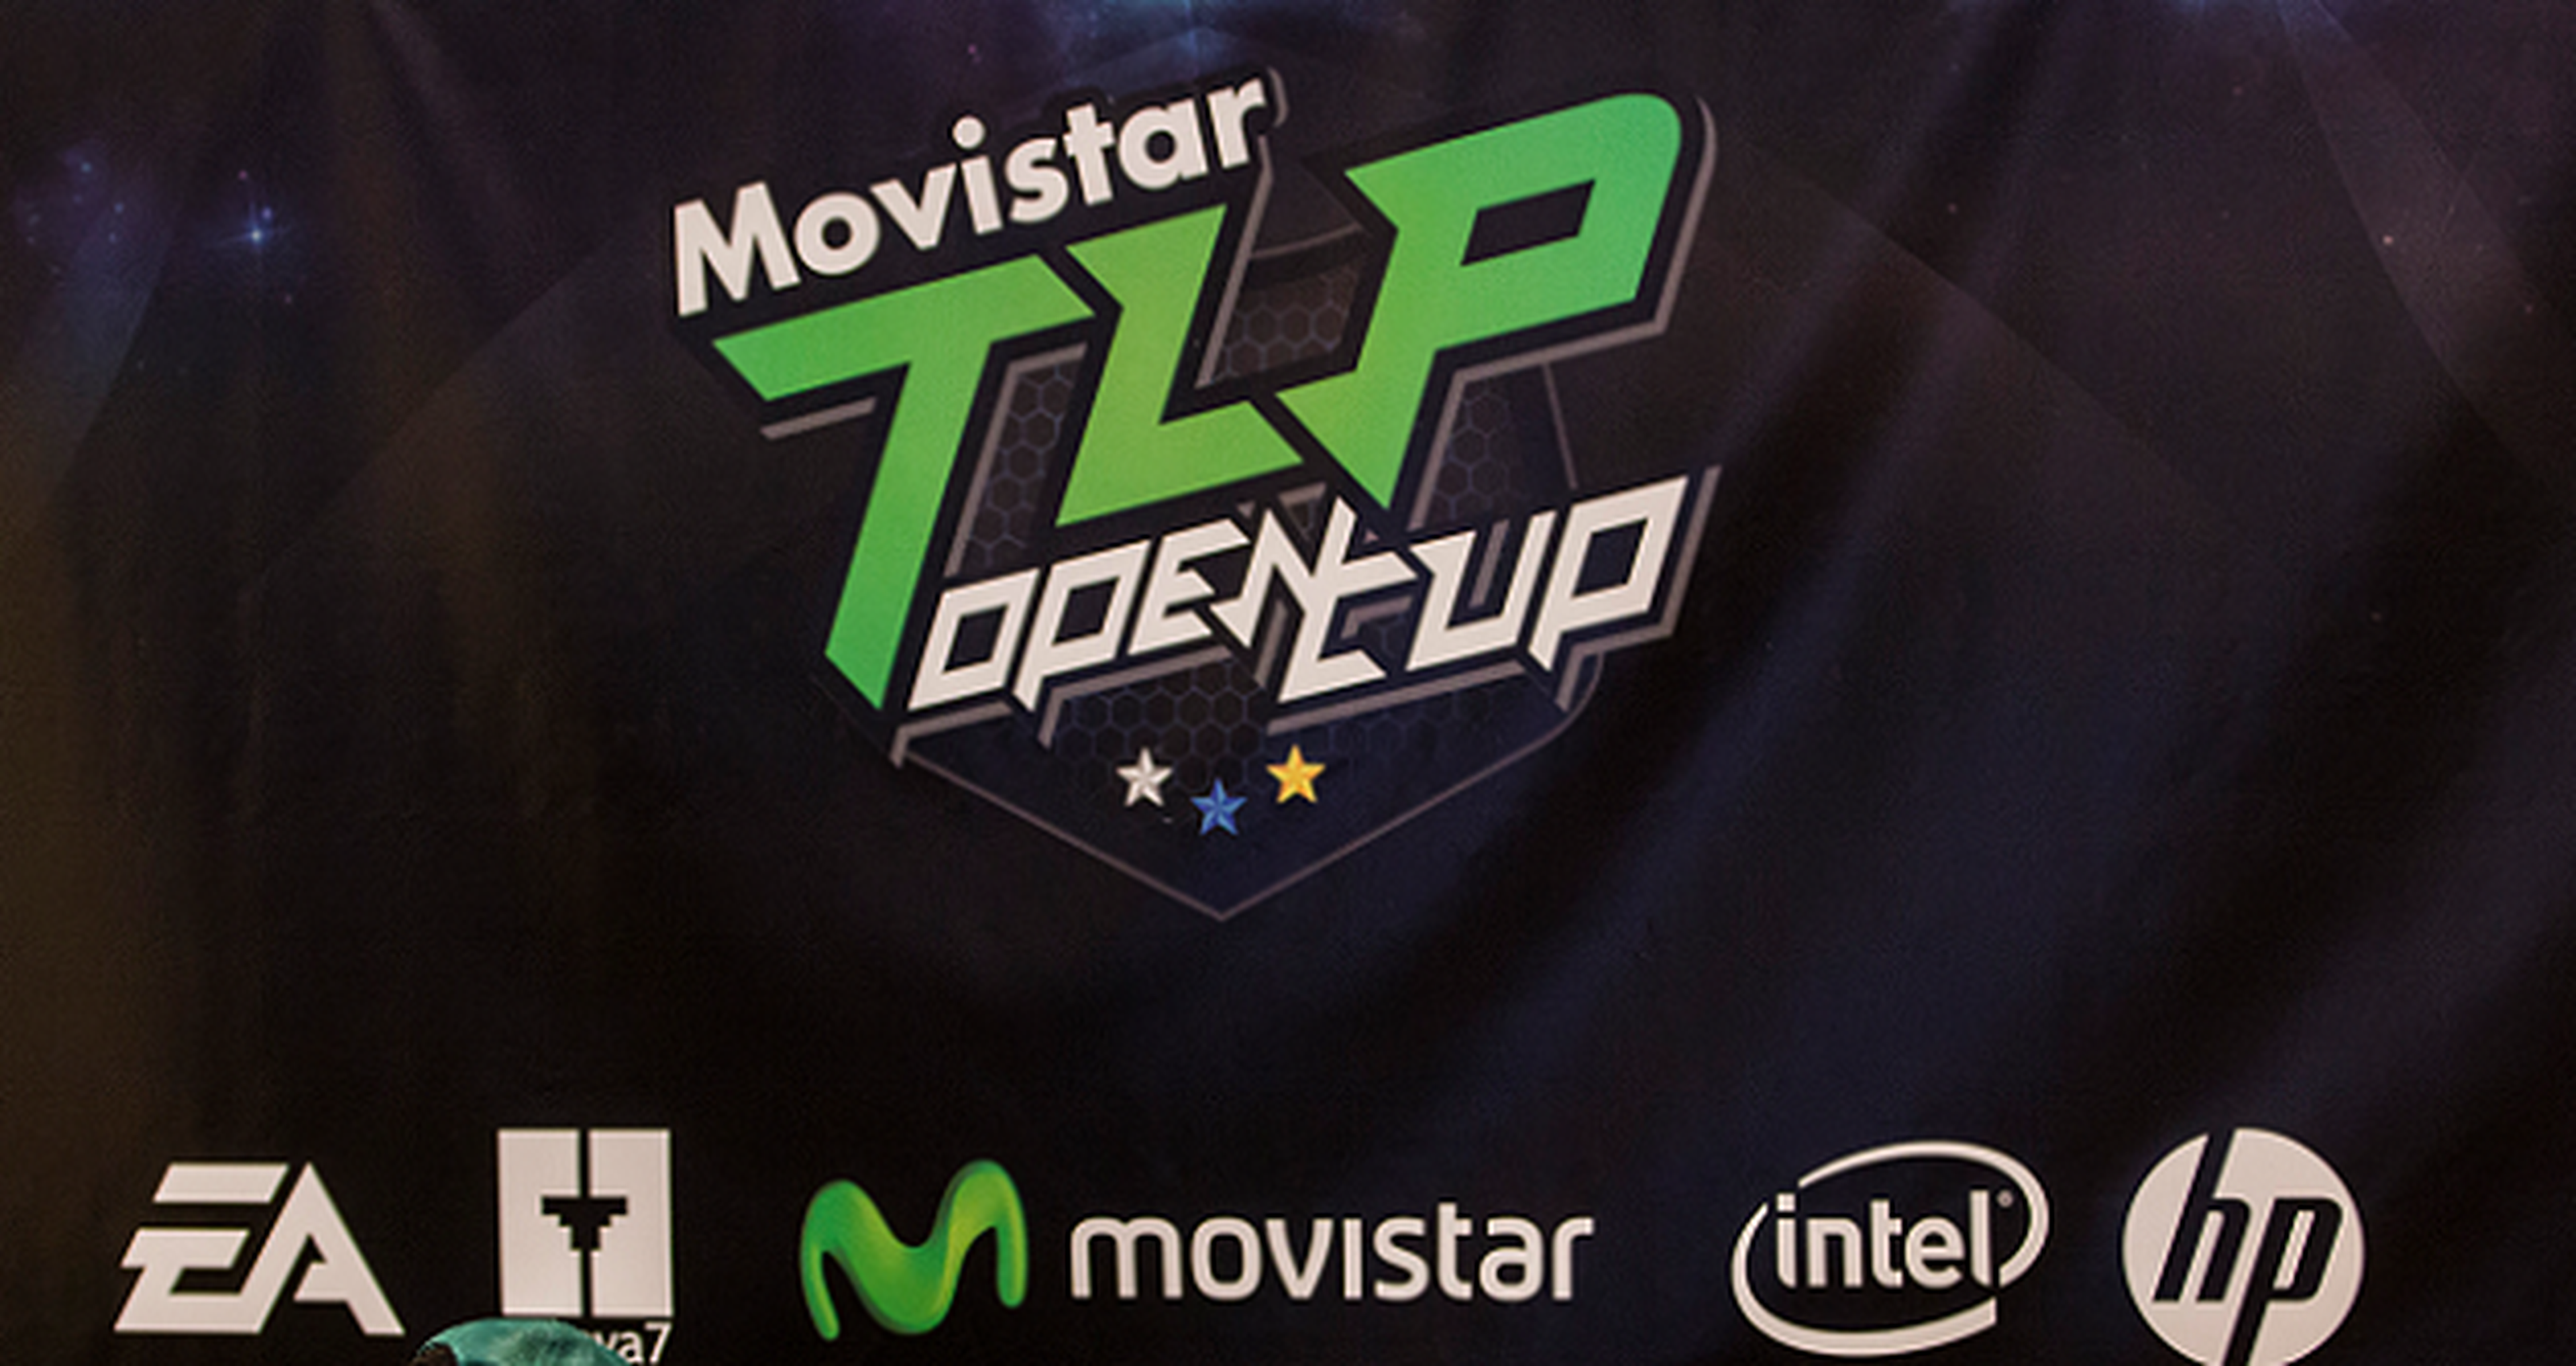 TLP Open Cup estará en Madrid del 4 al 6 de abril